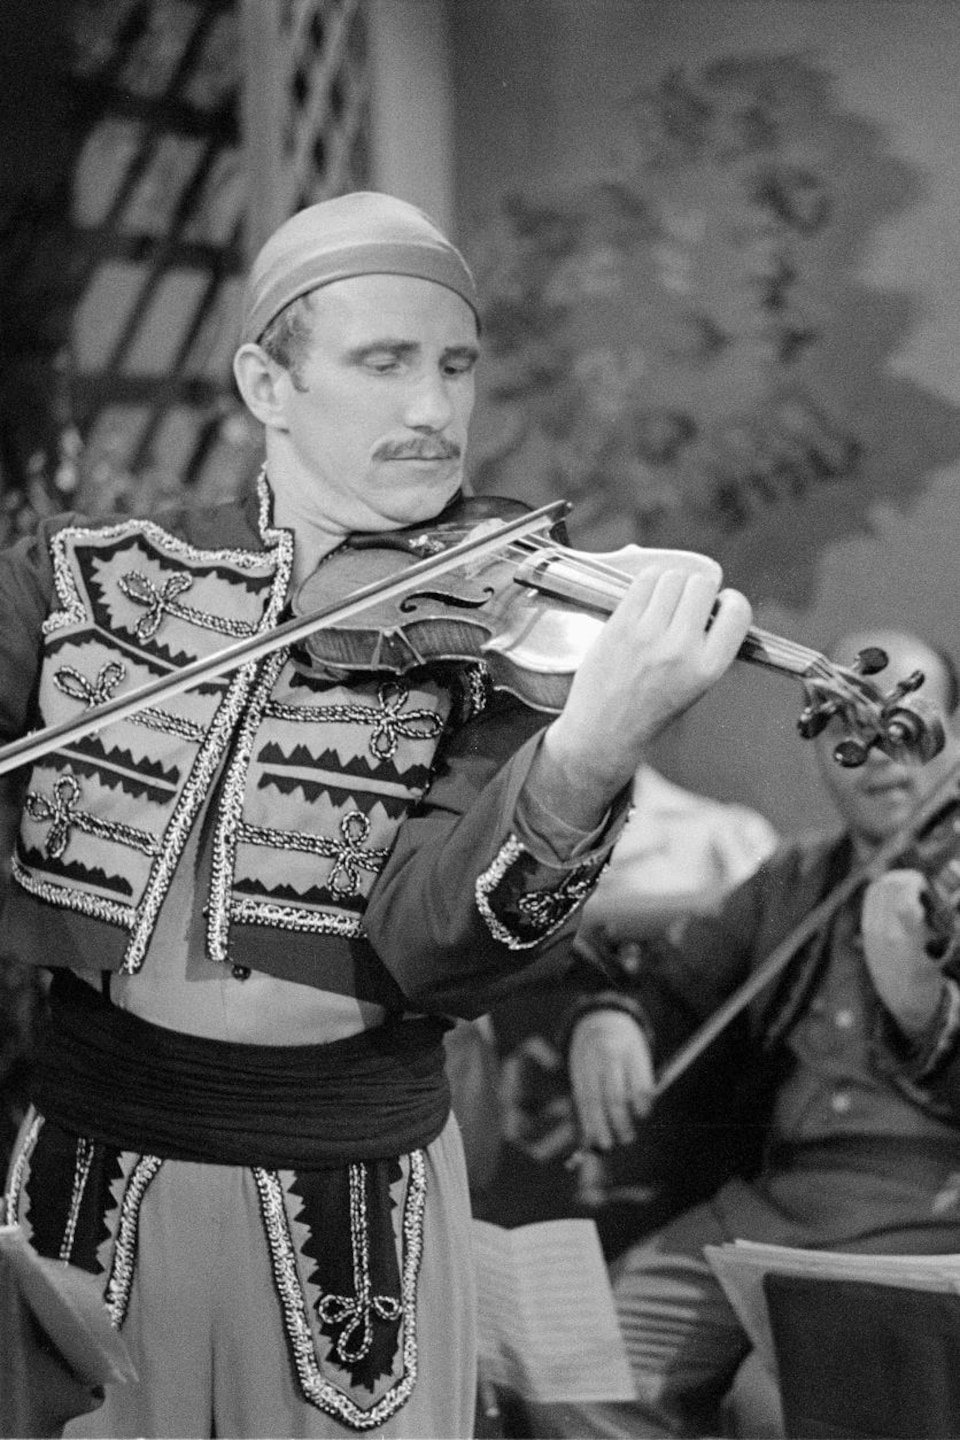 Georges Lapenson joue du violon devant un orchestre en costume folklorique.